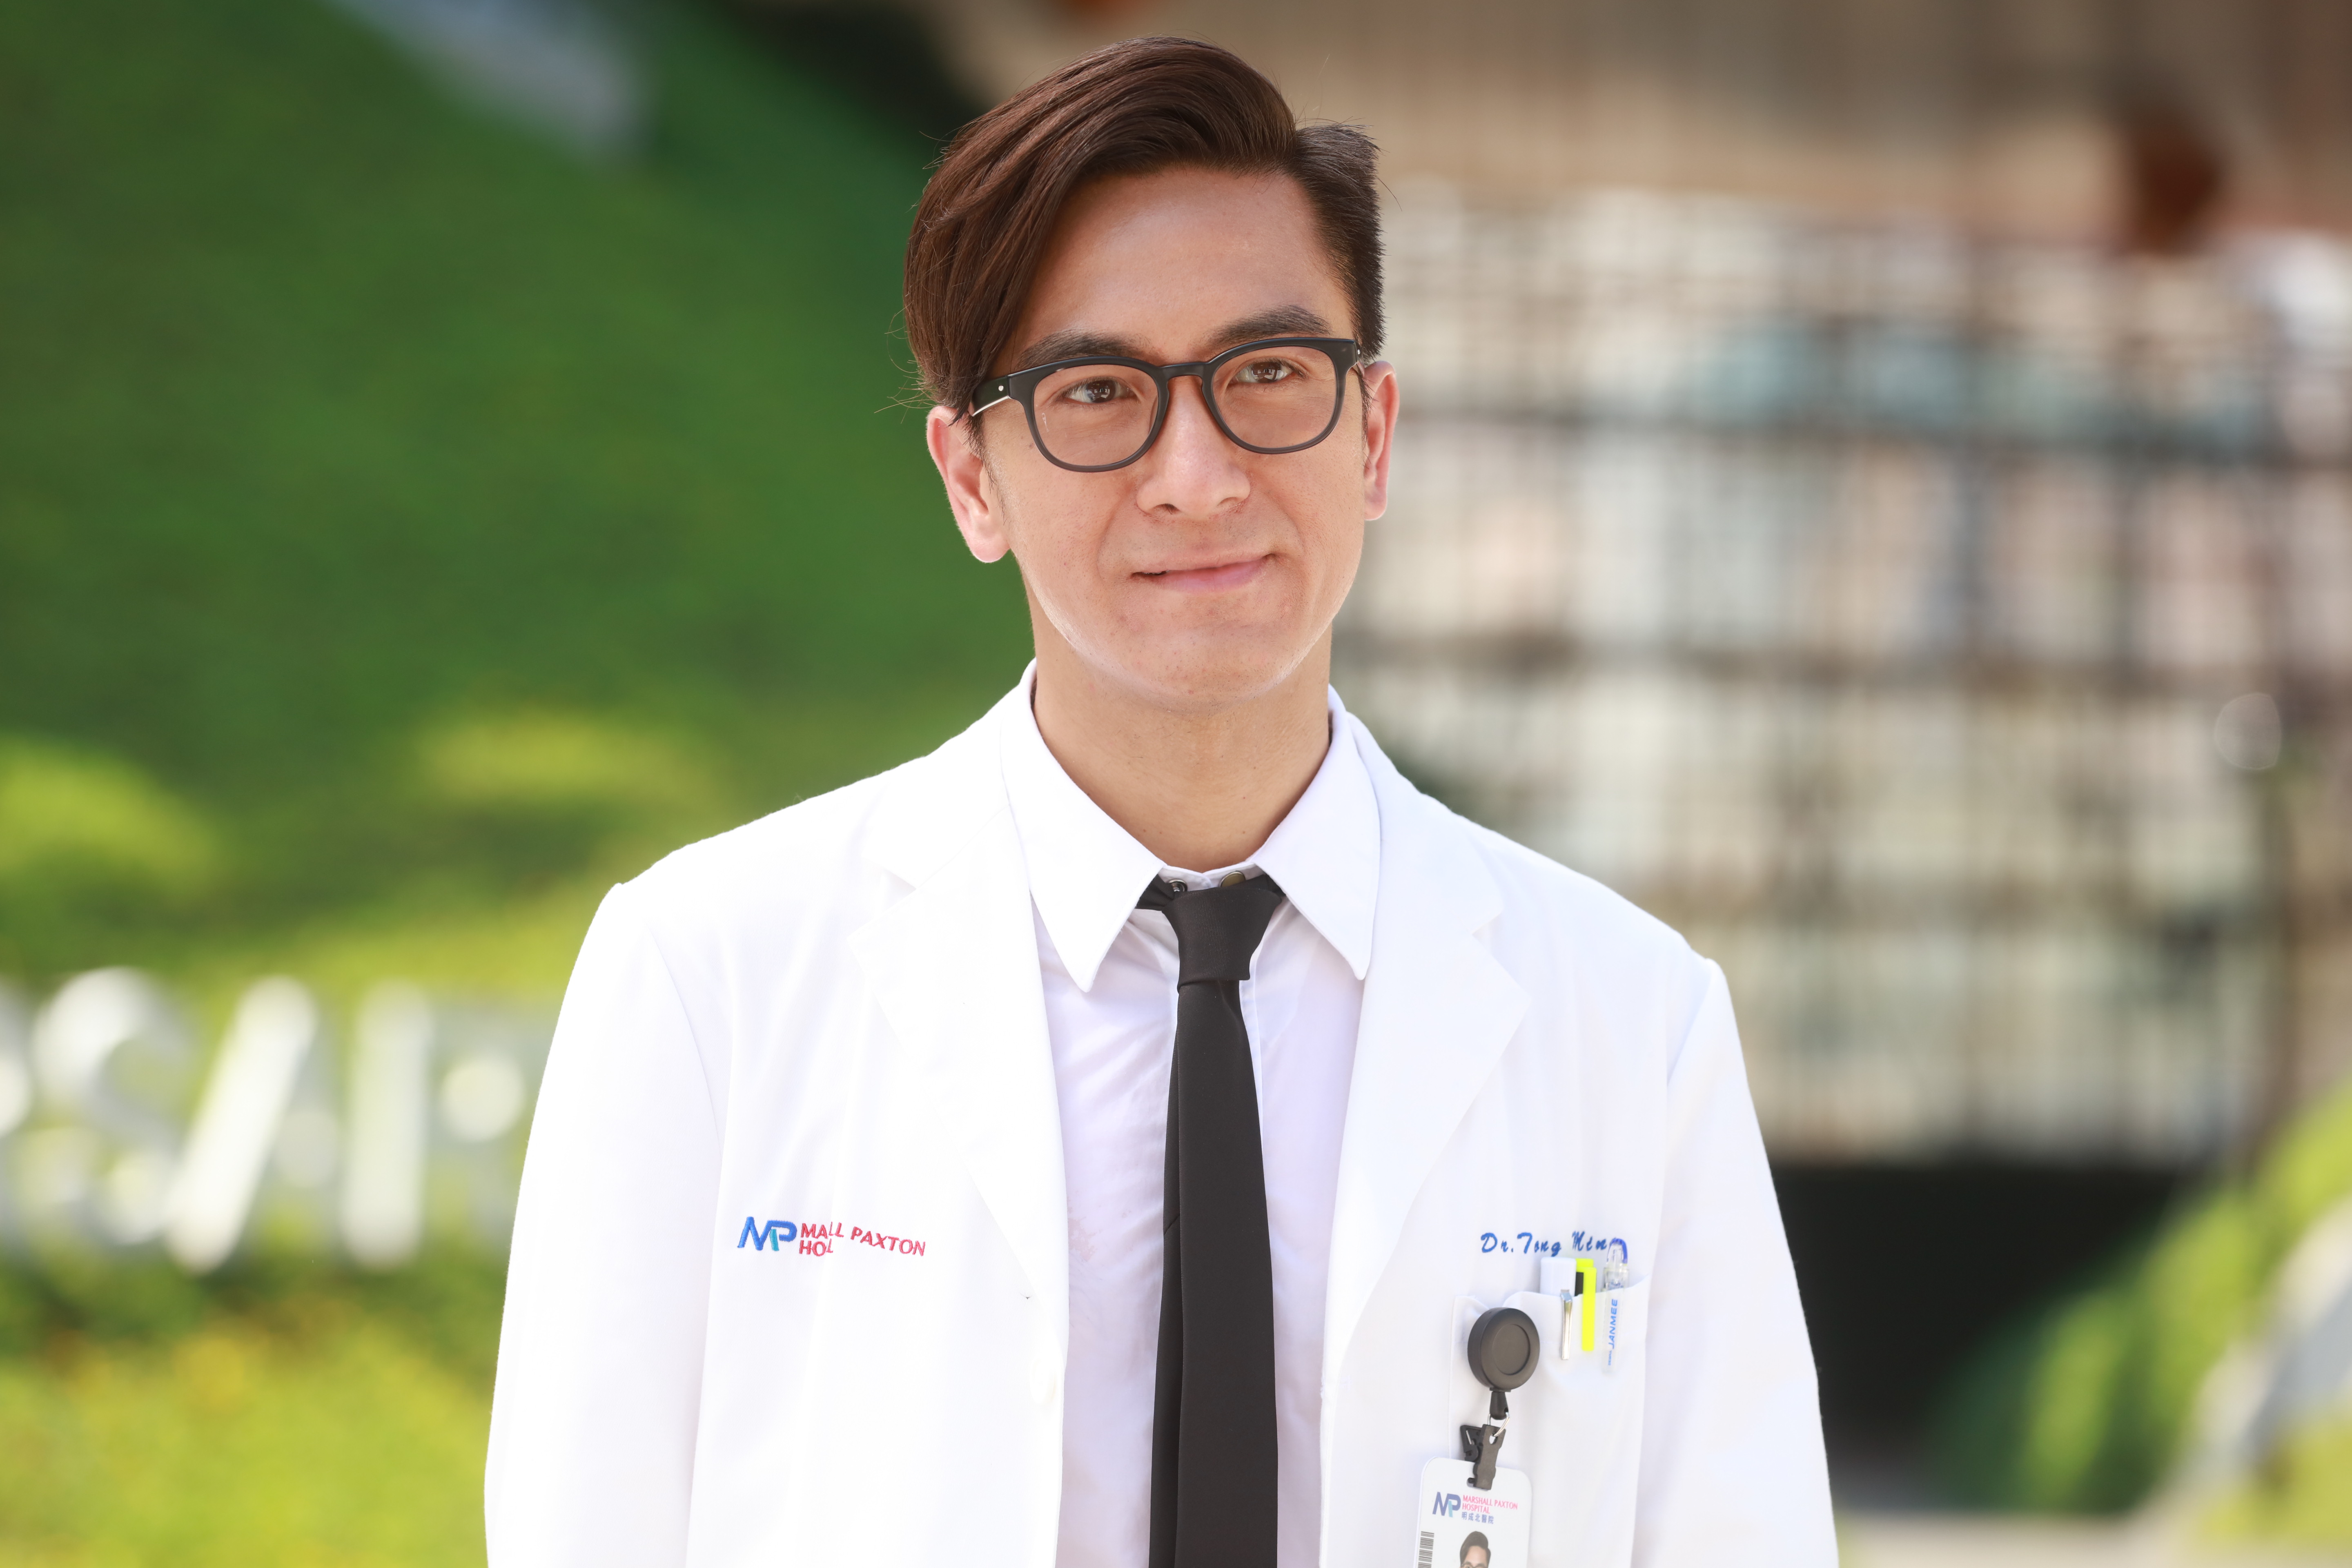 2019年《白色強人》飾演心胸肺外科主管醫生 唐明